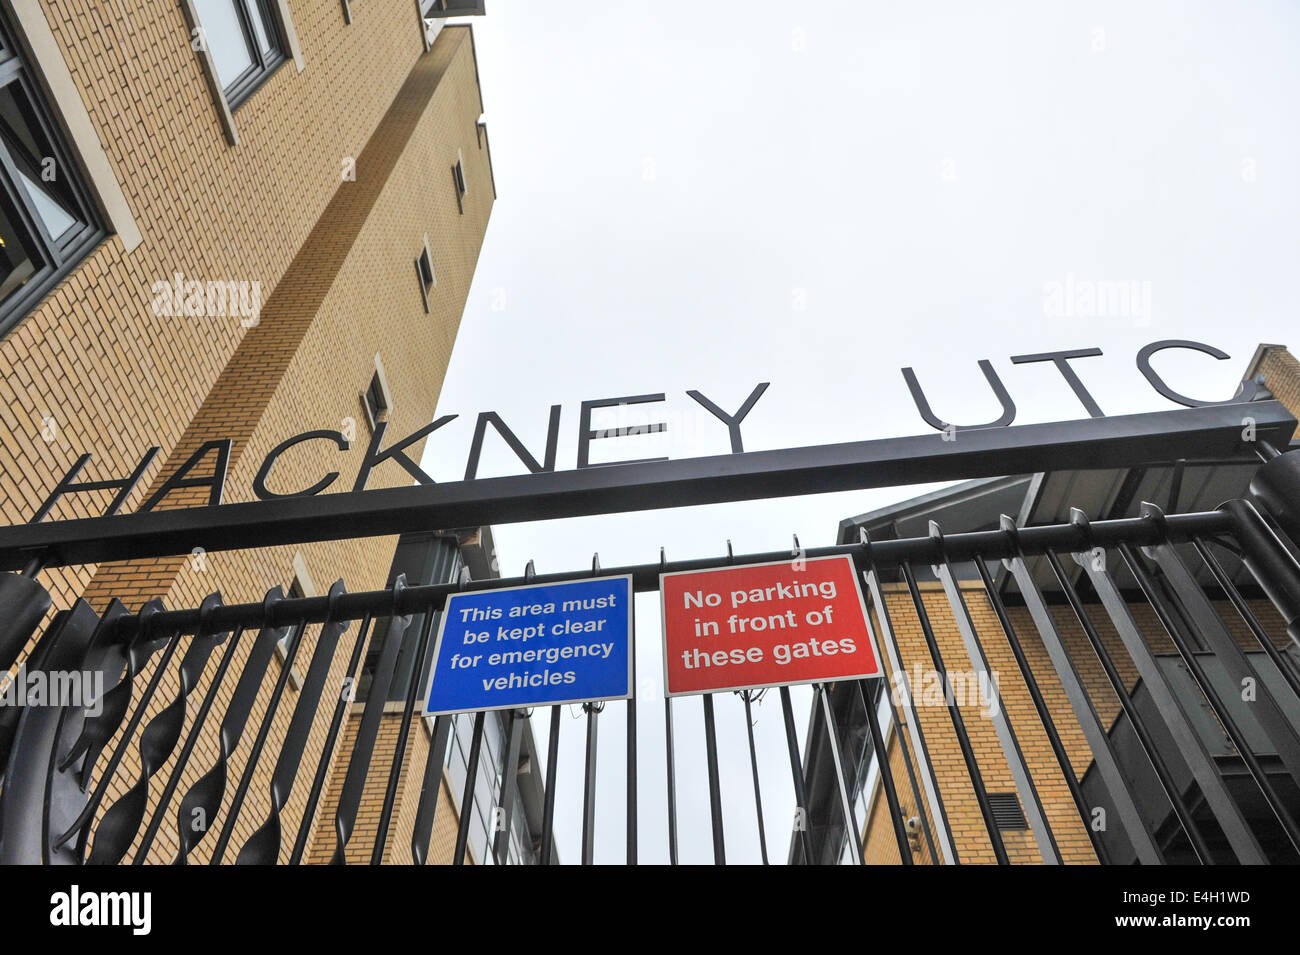 Kingsland Road, Hoxton, London, UK. 11 juillet 2014. Le Hackney UTC, le premier à ouvrir à Londres est de fermer après seulement deux ans. Seulement 29 demandes ont été reçues d'une cible de 75 pour septembre et est maintenant considérée comme non viable. Crédit : Matthieu Chattle/Alamy Live News Banque D'Images